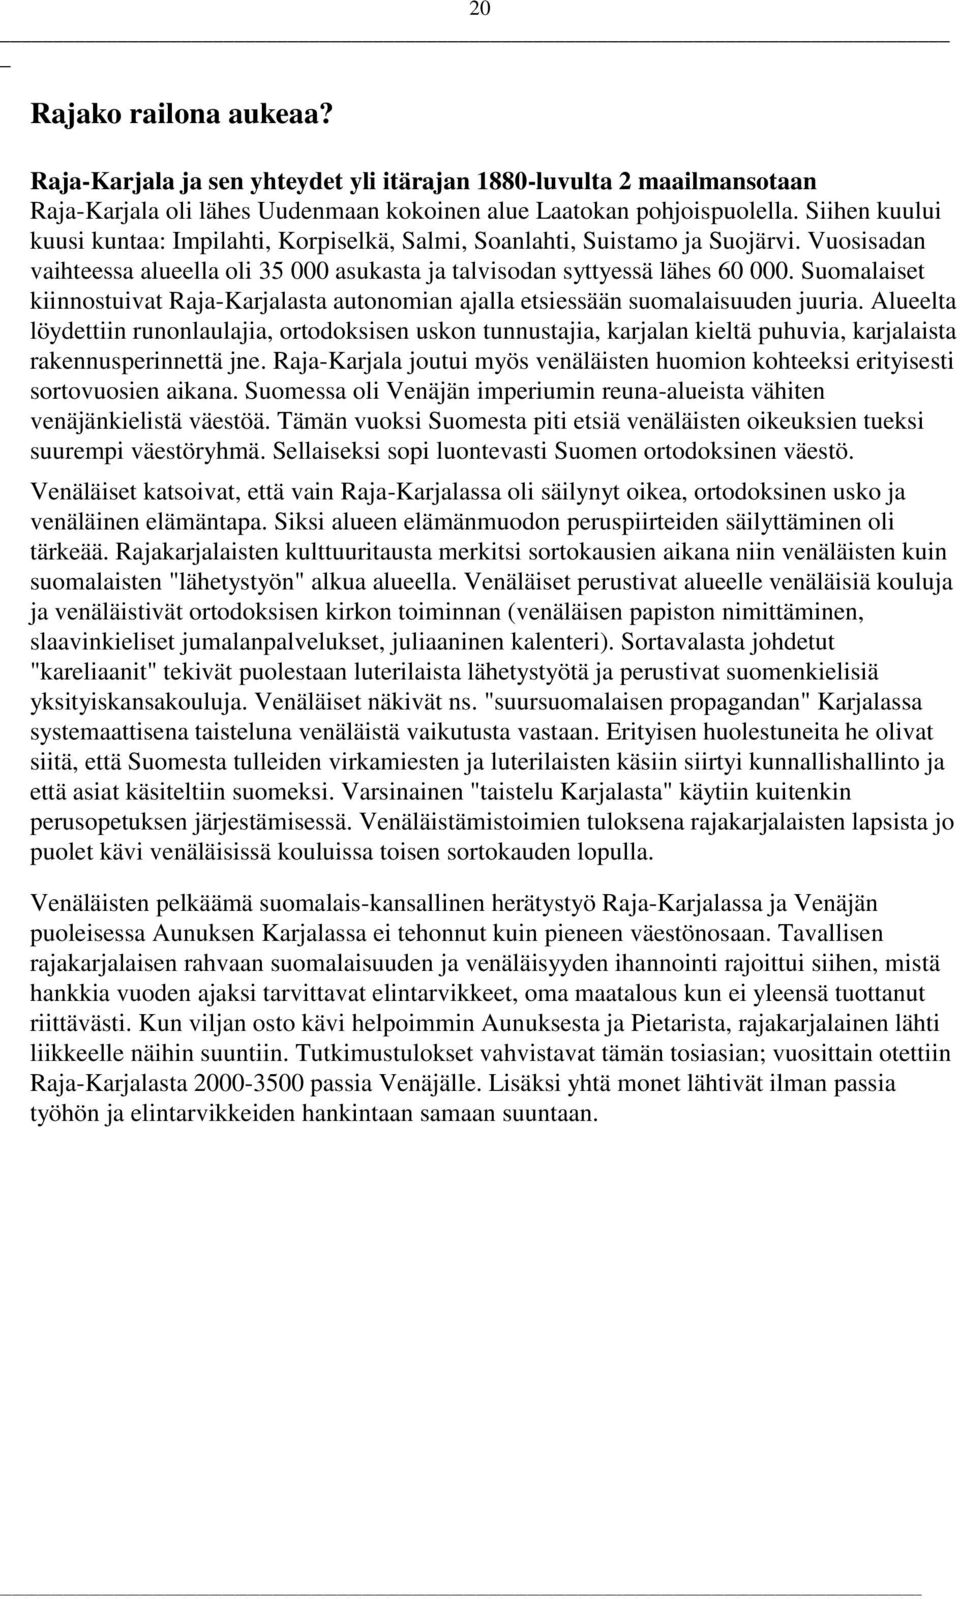 Suomalaiset kiinnostuivat Raja-Karjalasta autonomian ajalla etsiessään suomalaisuuden juuria.